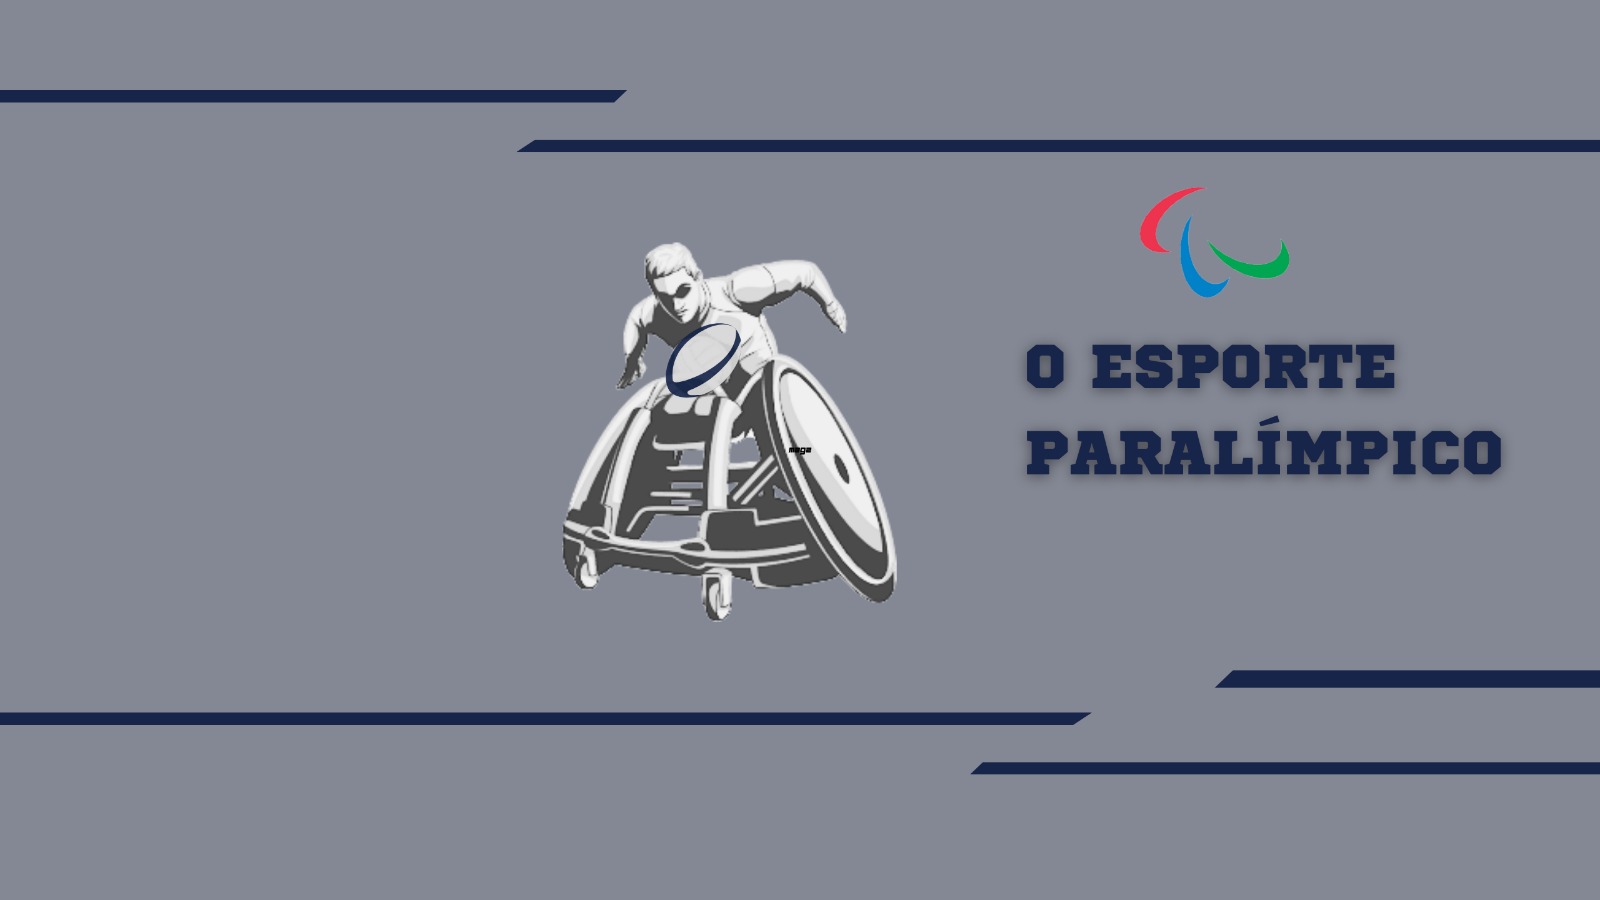 Um Olhar Econômico sobre a História e o Futuro dos Jogos no Brasil